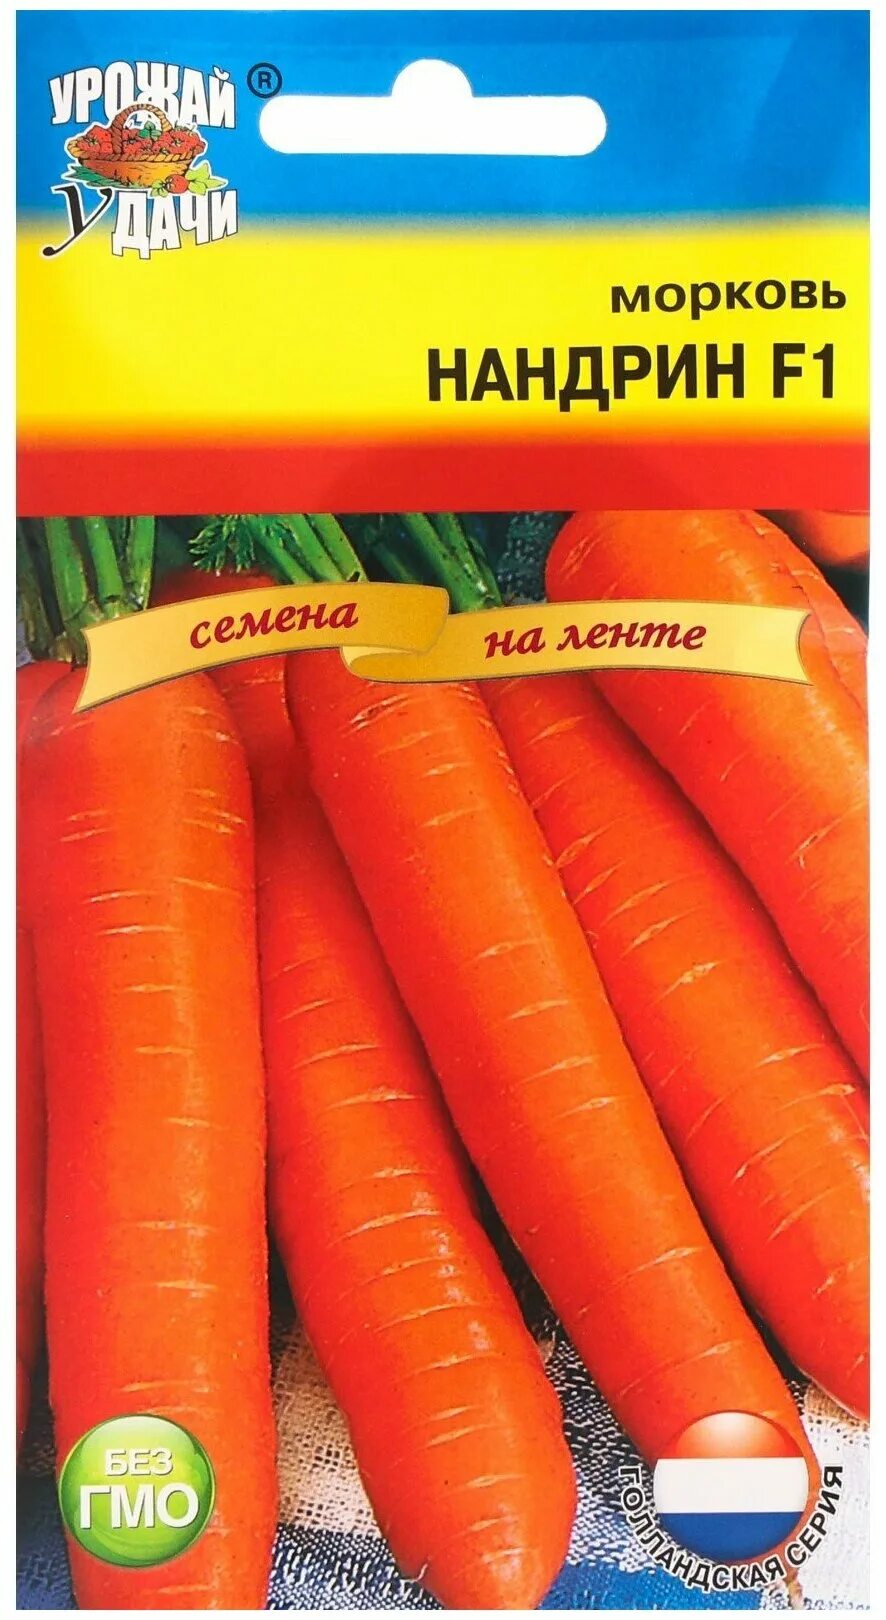 Морковь нандрин. Морковь Нандрин f1. Морковь Нандрин f1 семена. Семена моркови Нандрин. Голландские семена морковь Нандрин.